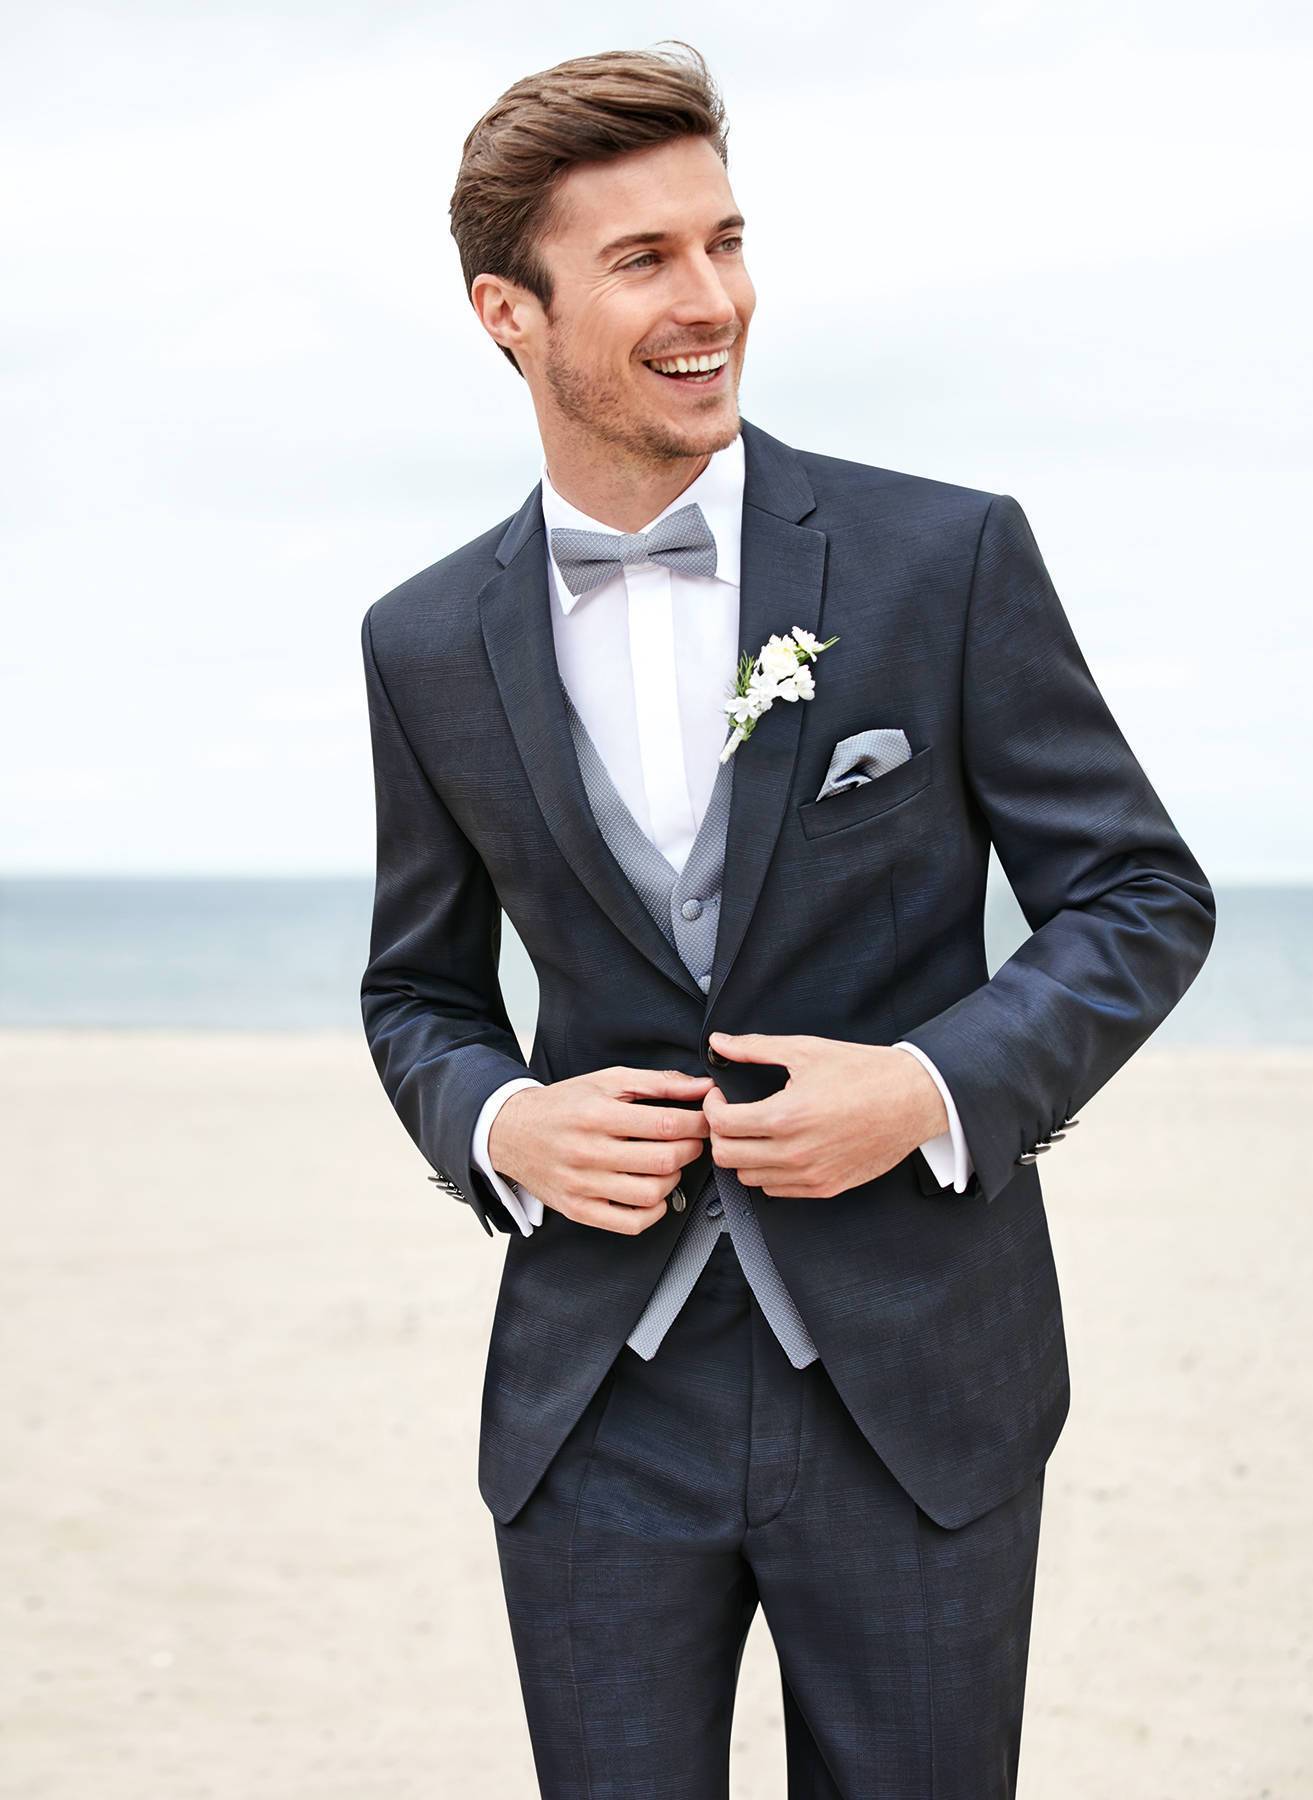 Тенденции свадебной моды для мужчин 2020: фото модных костюмов, тенденции